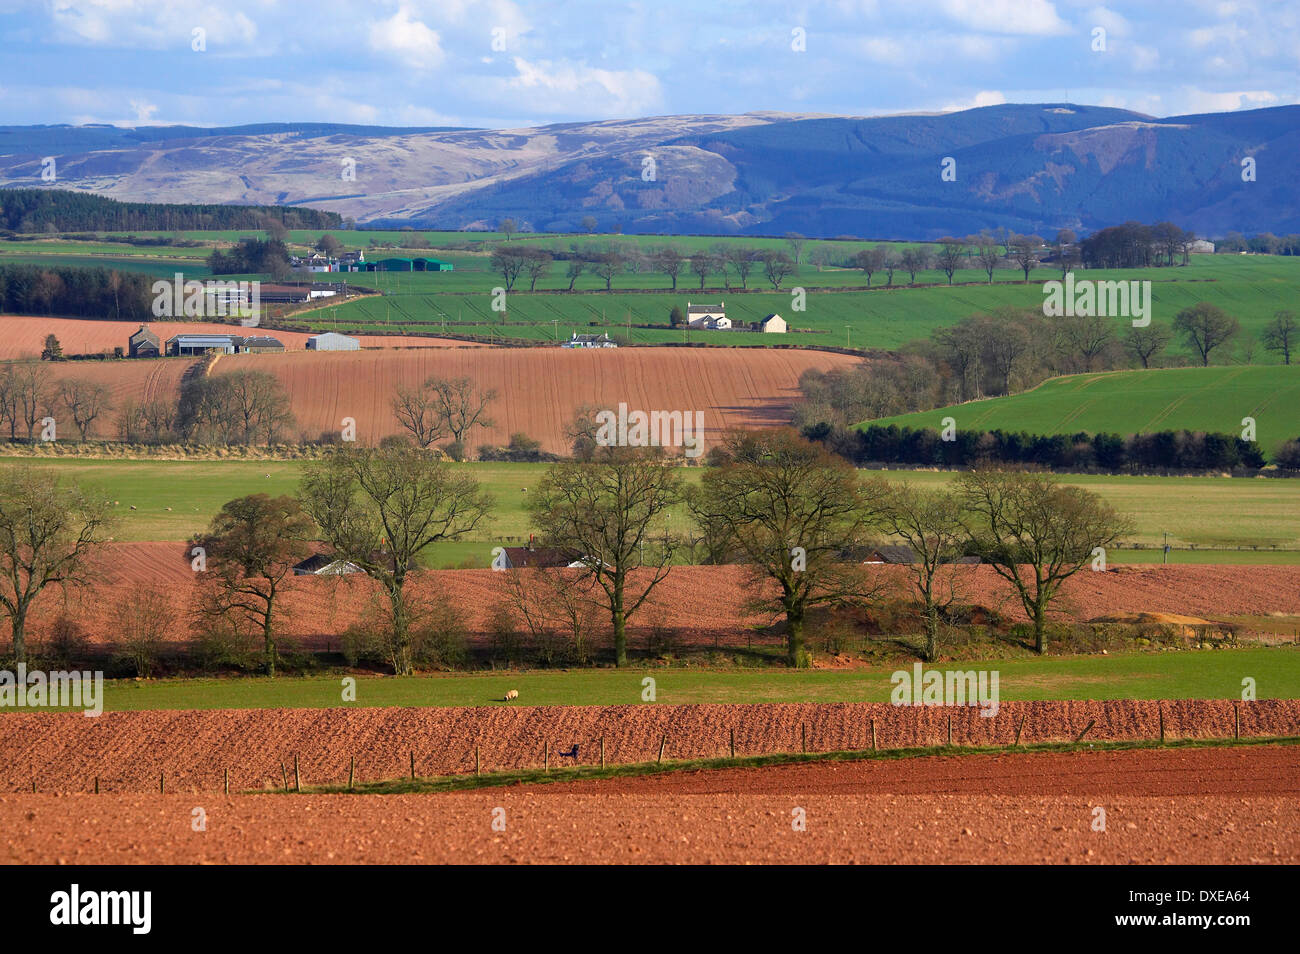 Près de pâturages agricoles crief avec les collines Orchil lointain en vue, le Perthshire. Banque D'Images